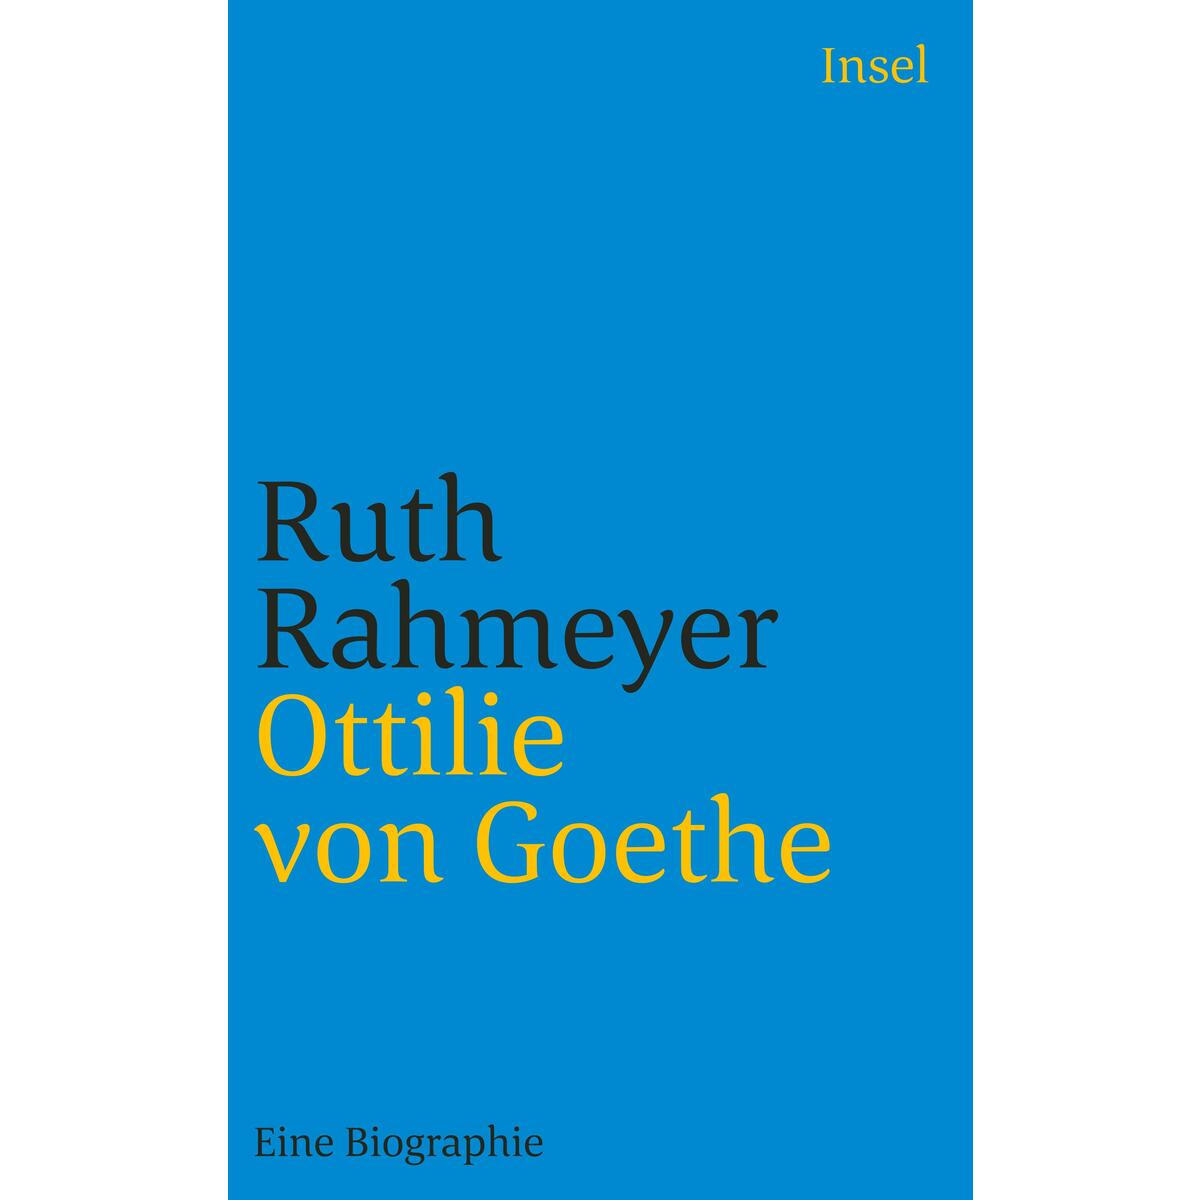 Ottilie von Goethe von Insel Verlag GmbH